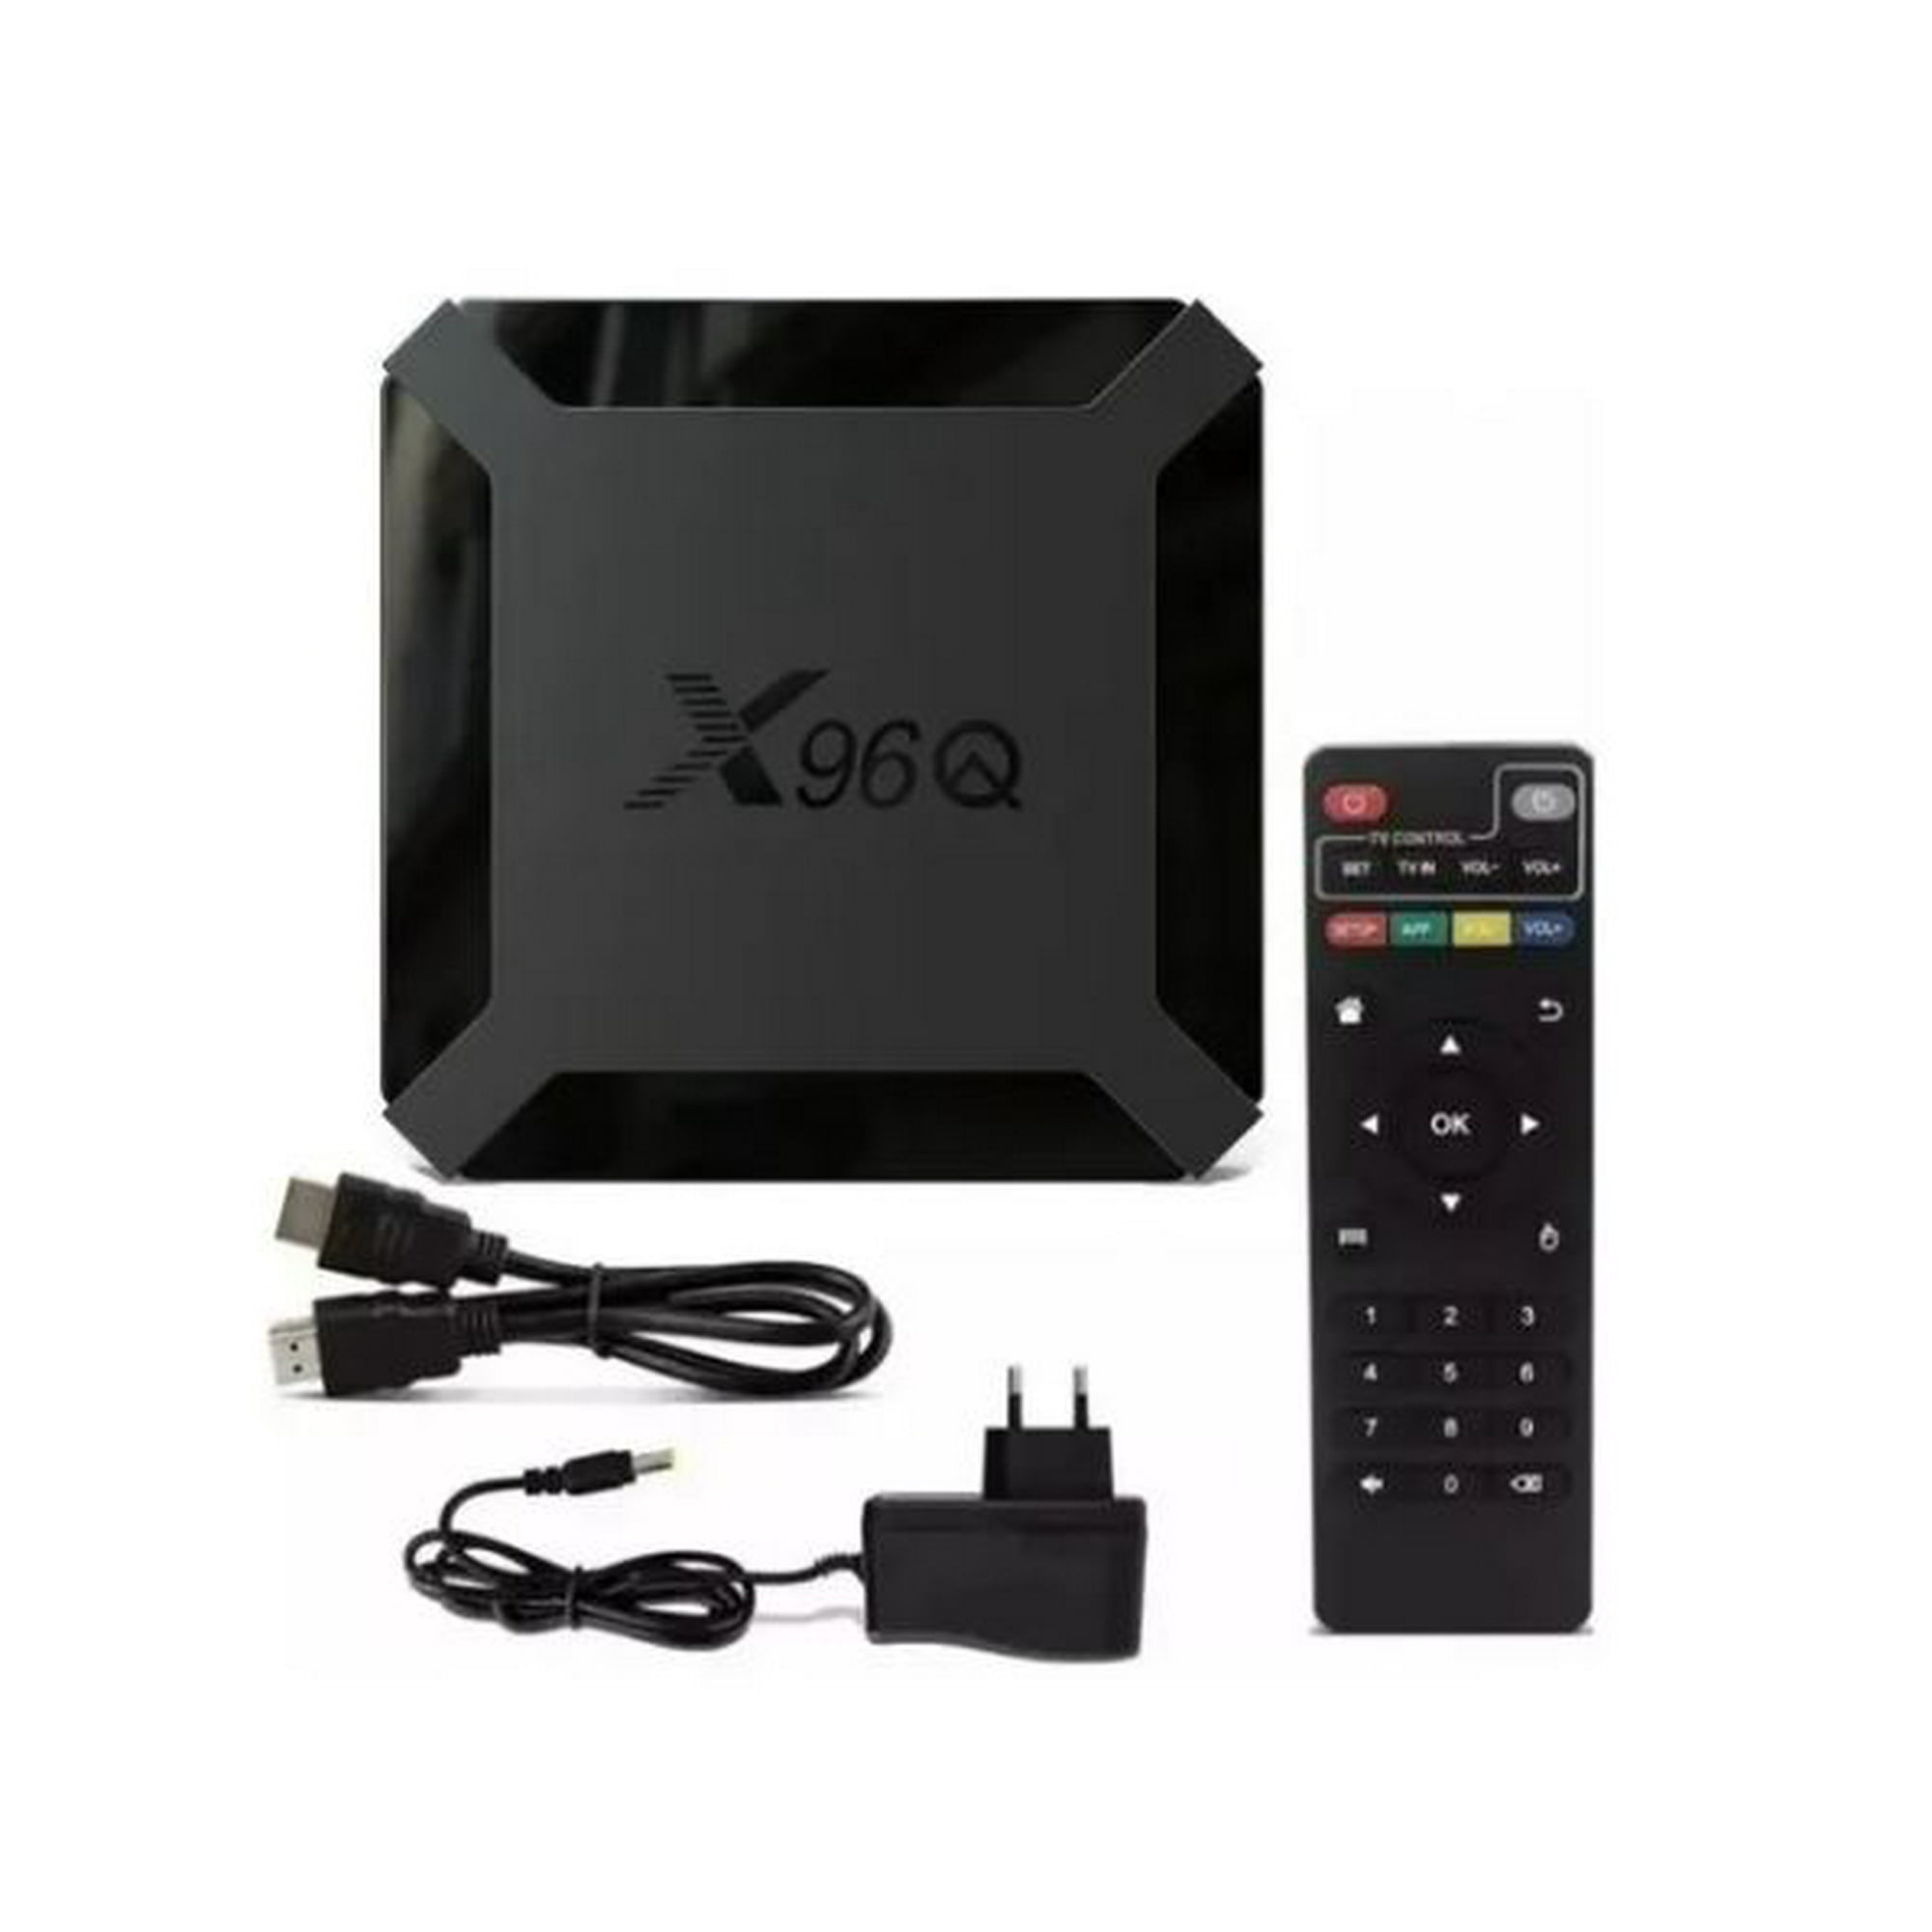 TV Box Convertidor Smart TV 4K con Android 10, Memoria RAM de 2GB,  Almacenamiento 16GB. Color Negro.